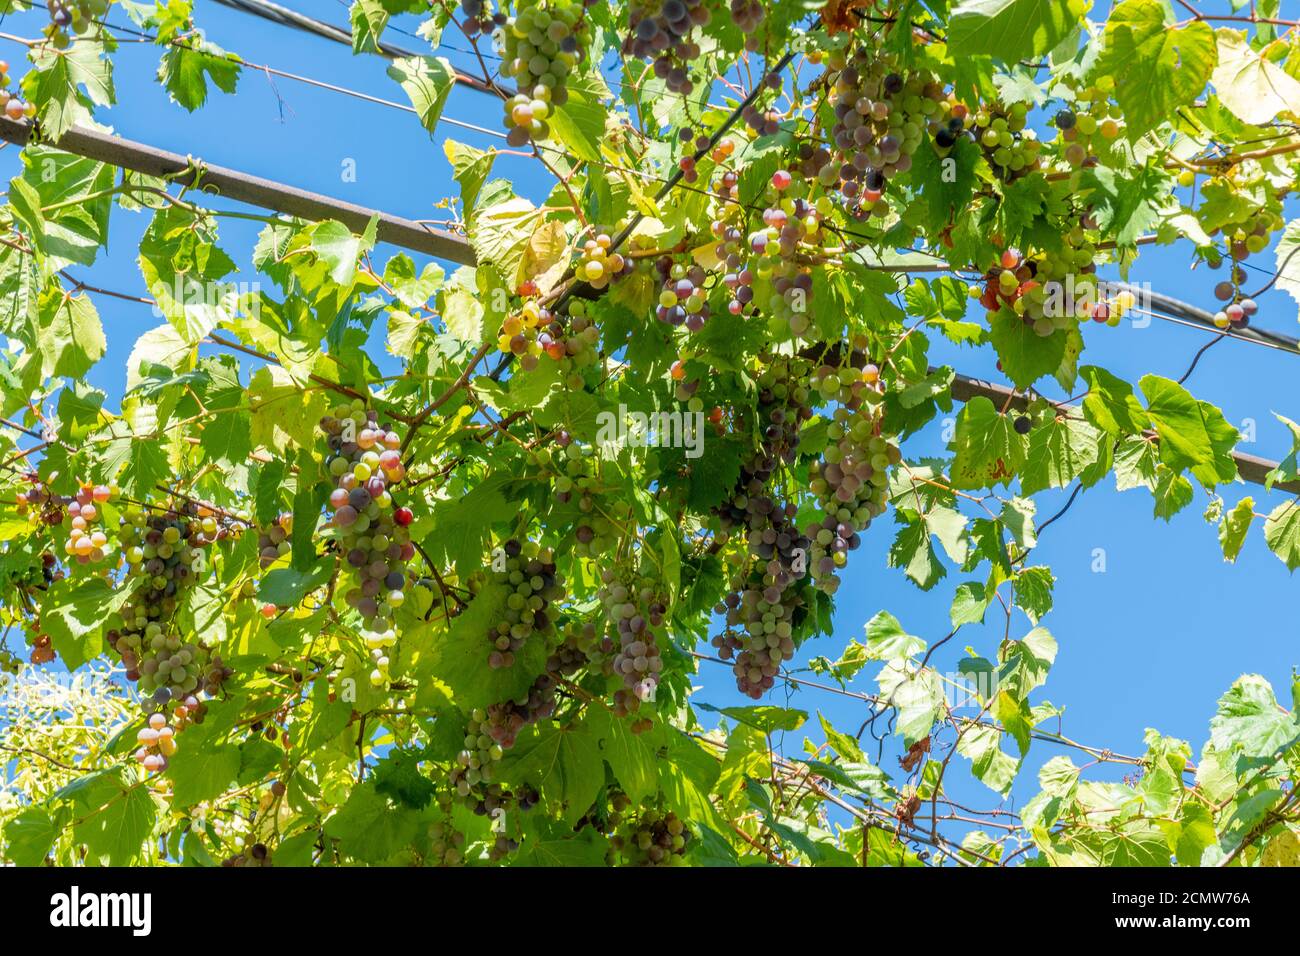 Des raisins blancs et rouges suspendus entourés de feuilles vertes luxuriantes contre le ciel bleu à un jour ensoleillé Banque D'Images